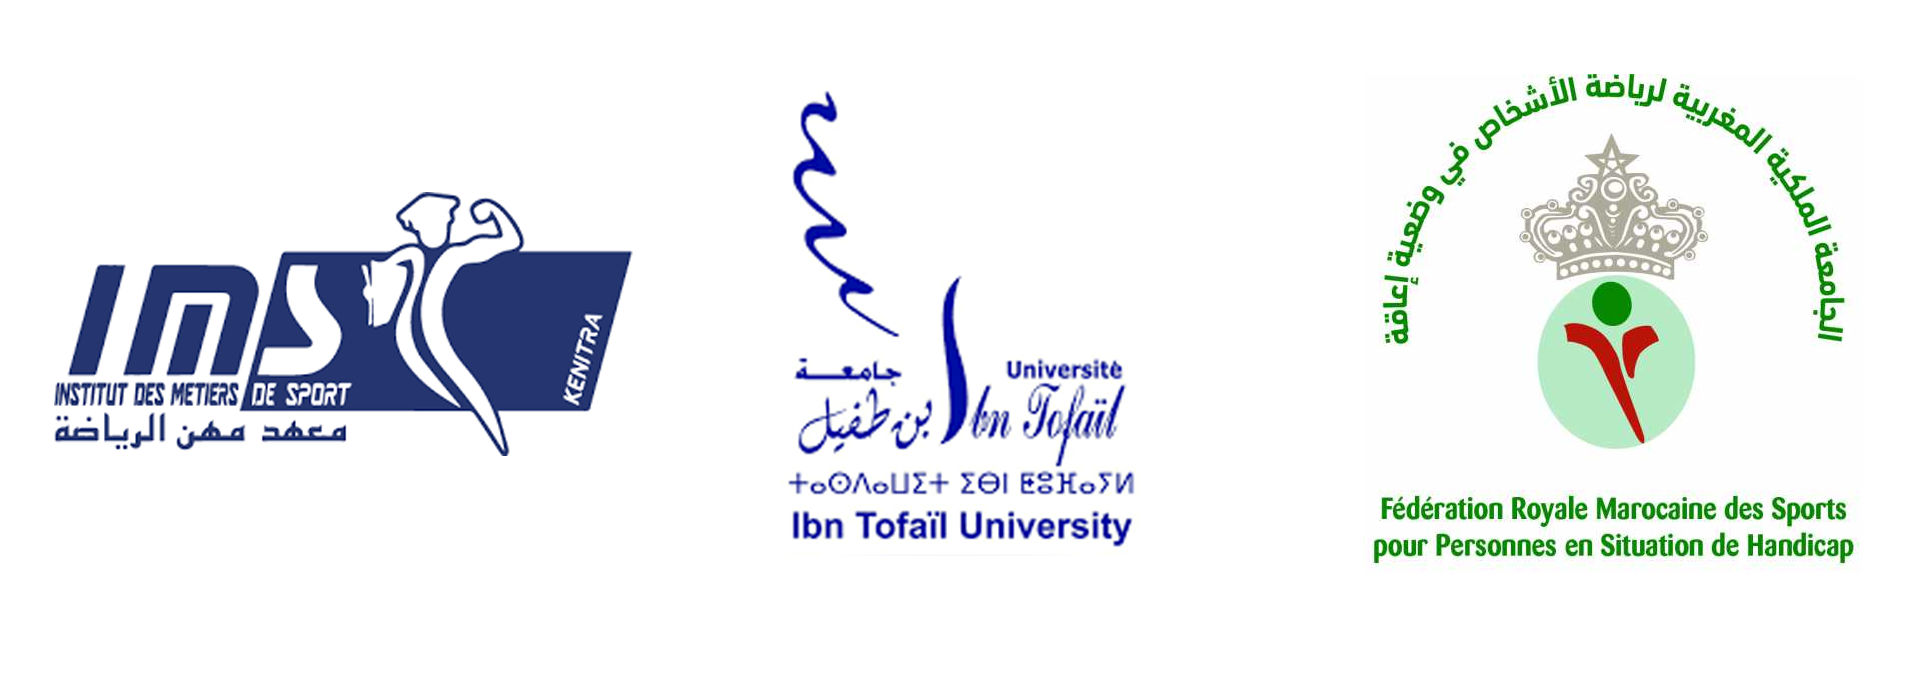 Institut des métiers du Sport -Université Ibnou Tofail / FRMSPSH: Création d’une licence professionnelle spéciale handisport